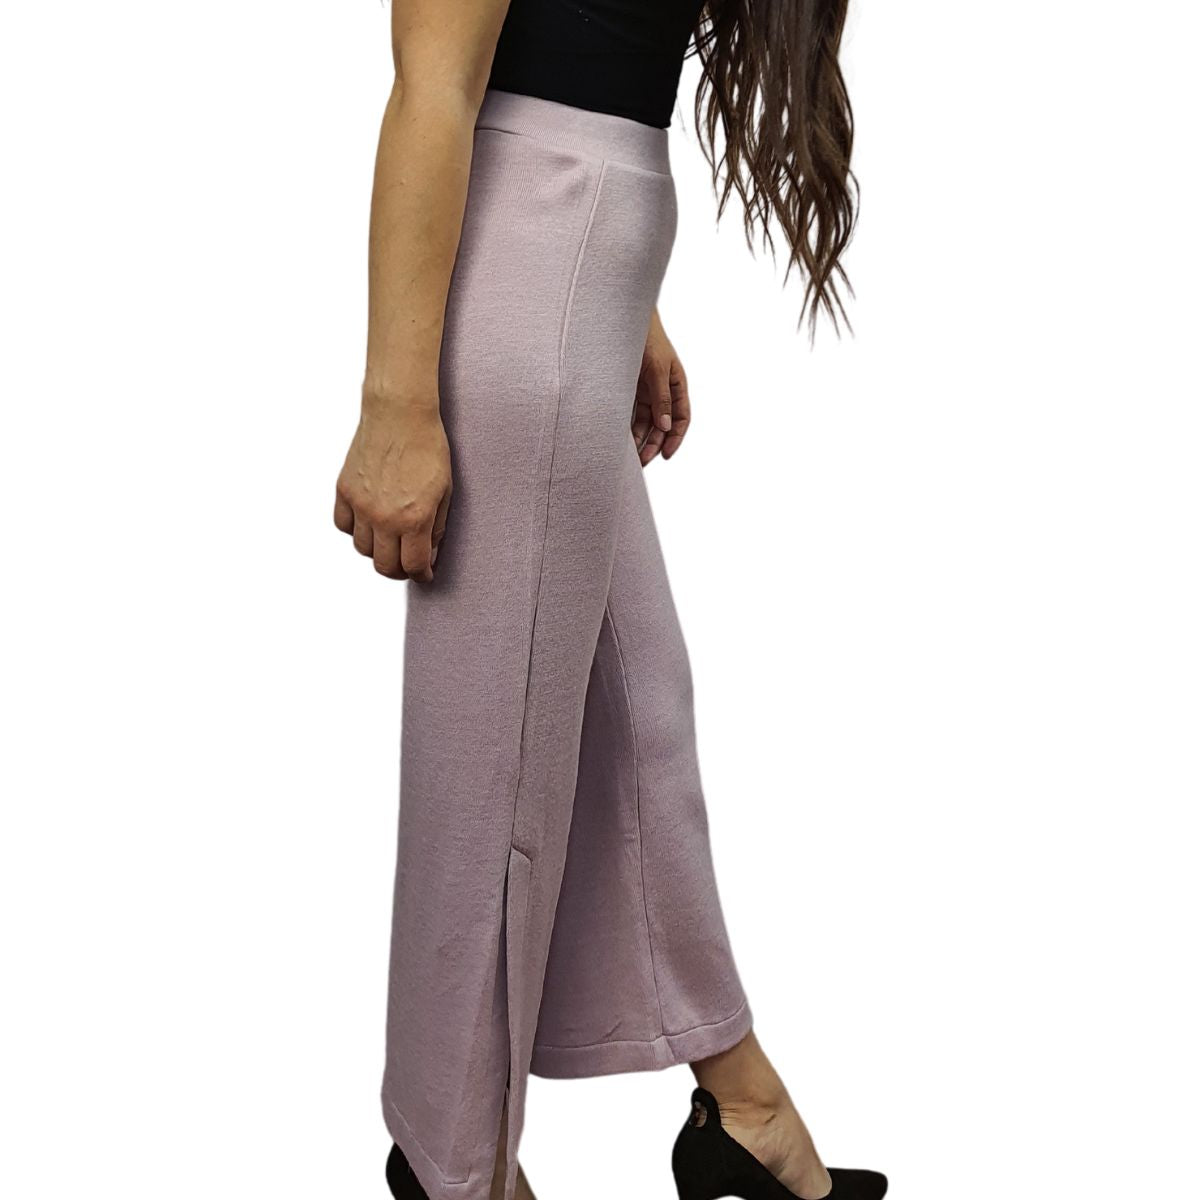 Pantalon Vero Moda Rosa Vieja Style FAY SWEAT PANTS(HOMEWEAR)